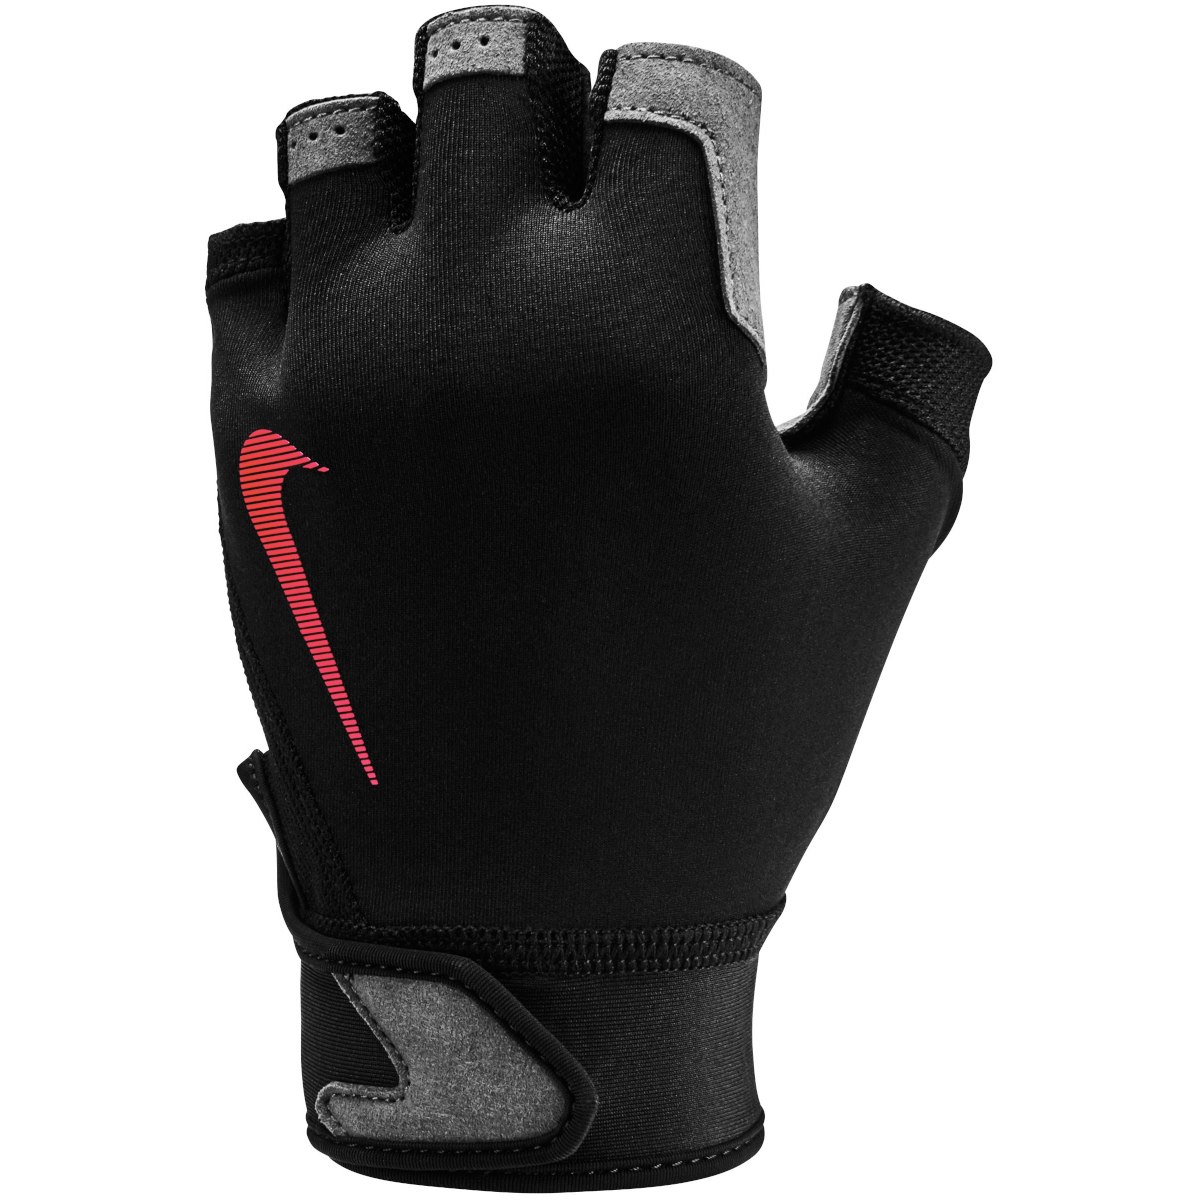 Produktbild von Nike Herren Ultimate Fitness-Handschuhe - black/light crimson/light crimson 074